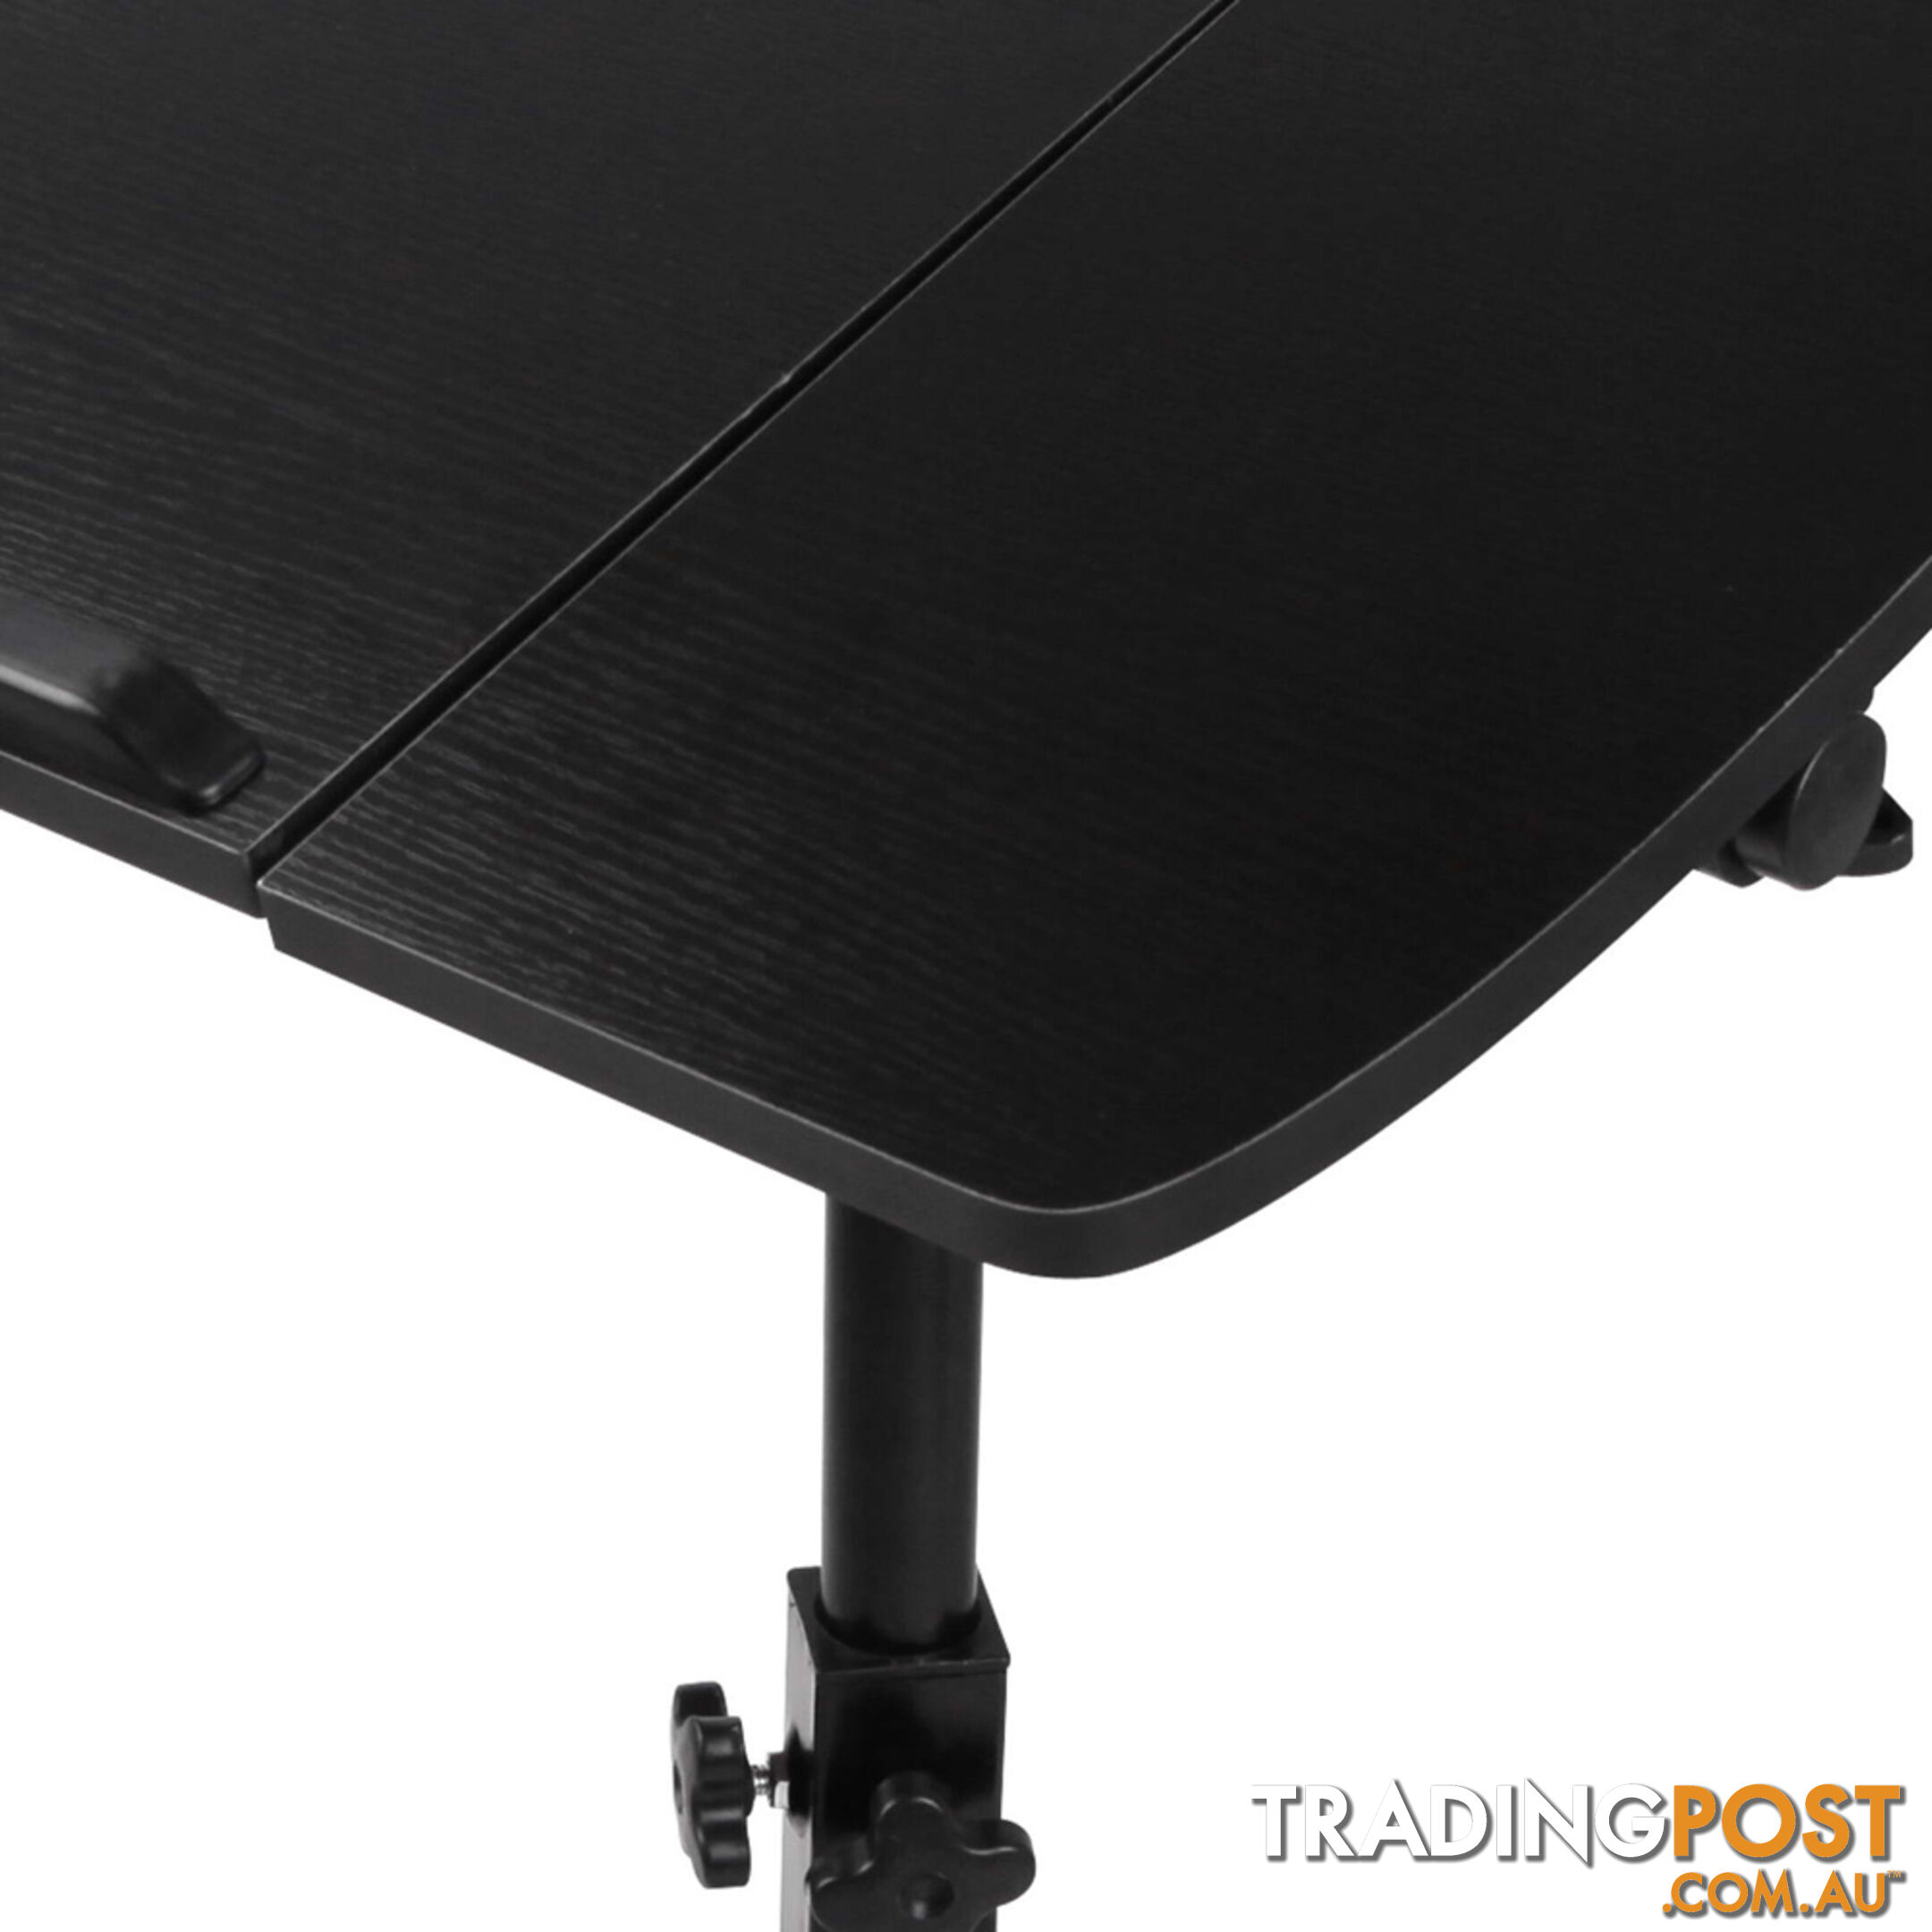 Rotating Mobile Laptop Adjustable Desk w/ USB Cooler Black